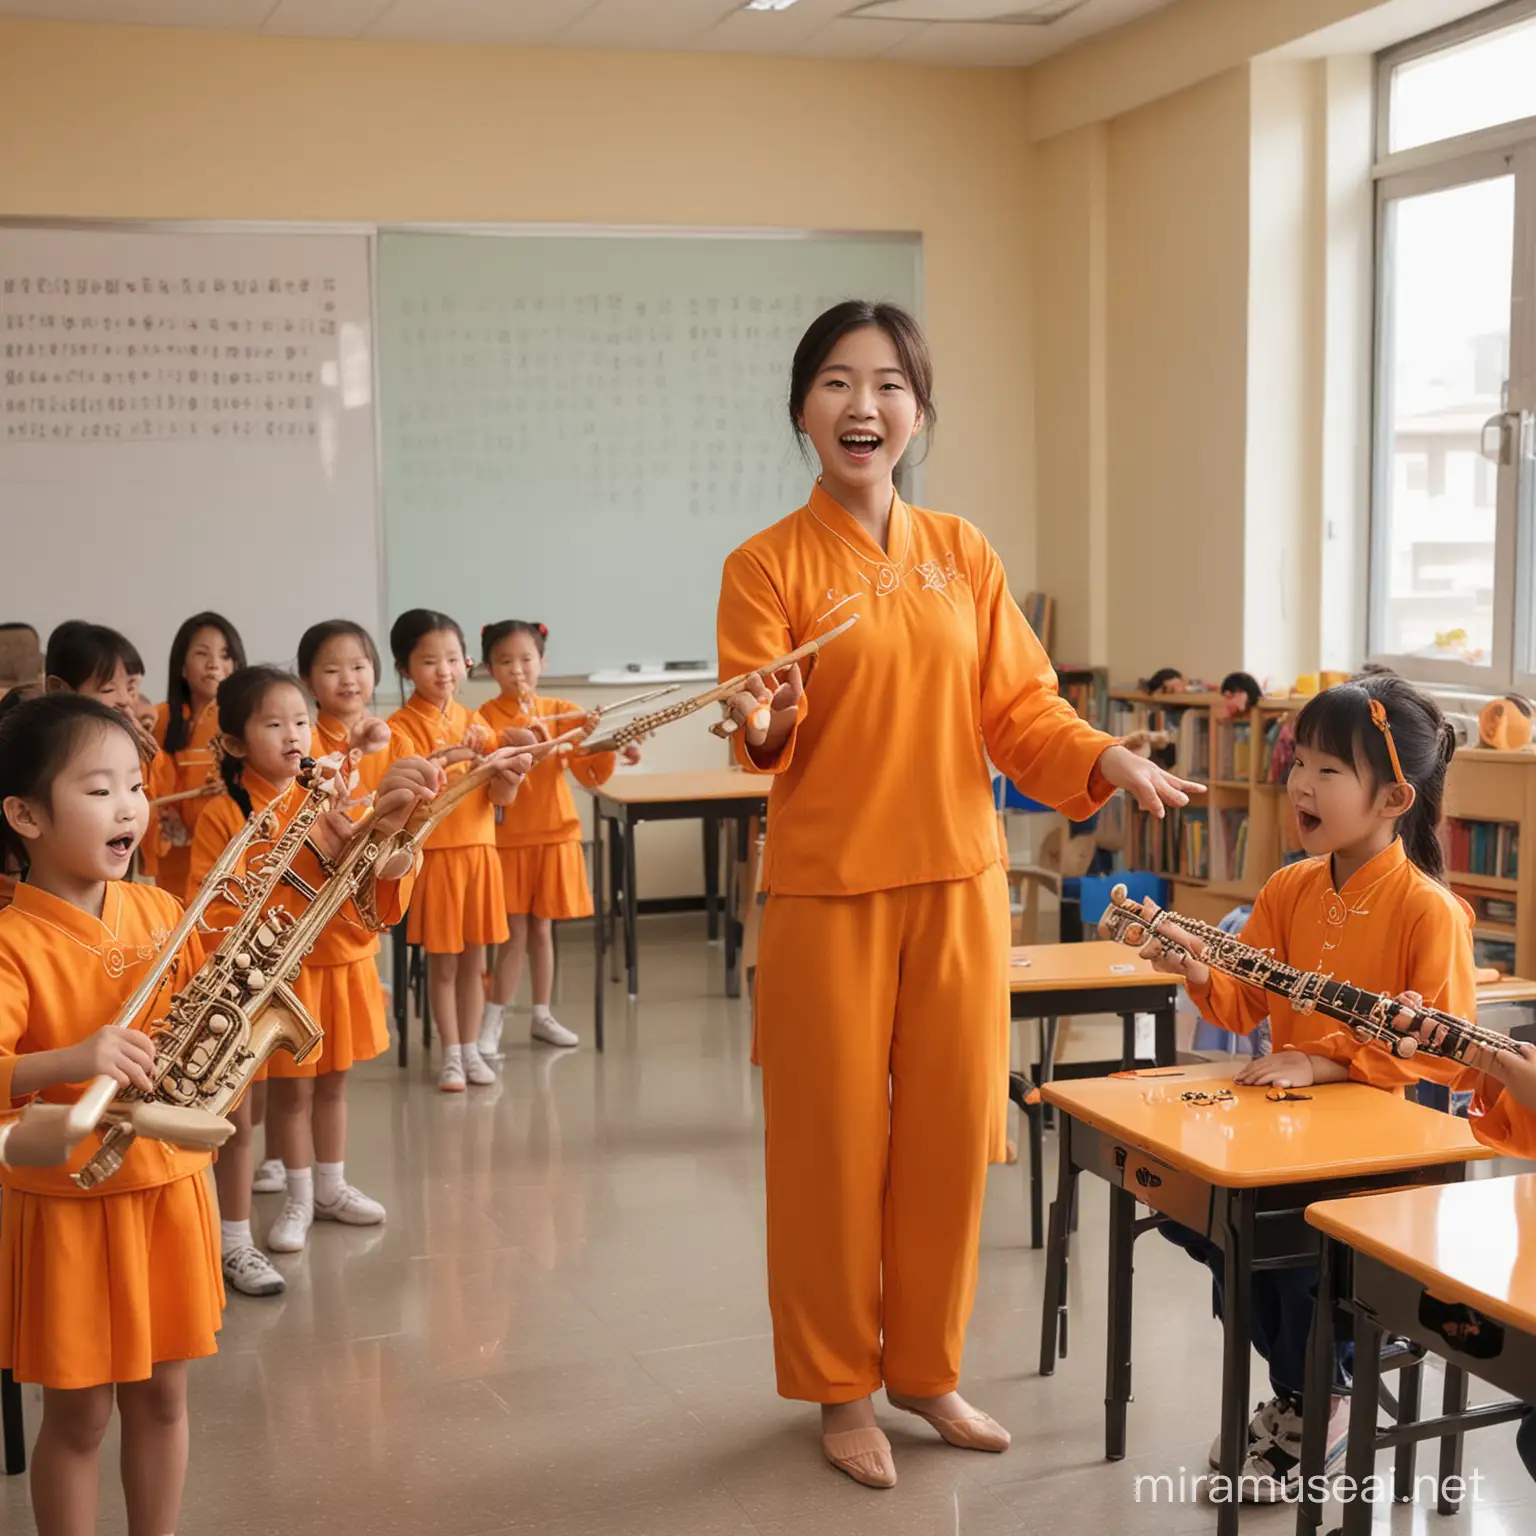 背景橘色，一些中国小朋友在音乐教室弹奏乐器、唱歌、跳舞；老师在旁边指导